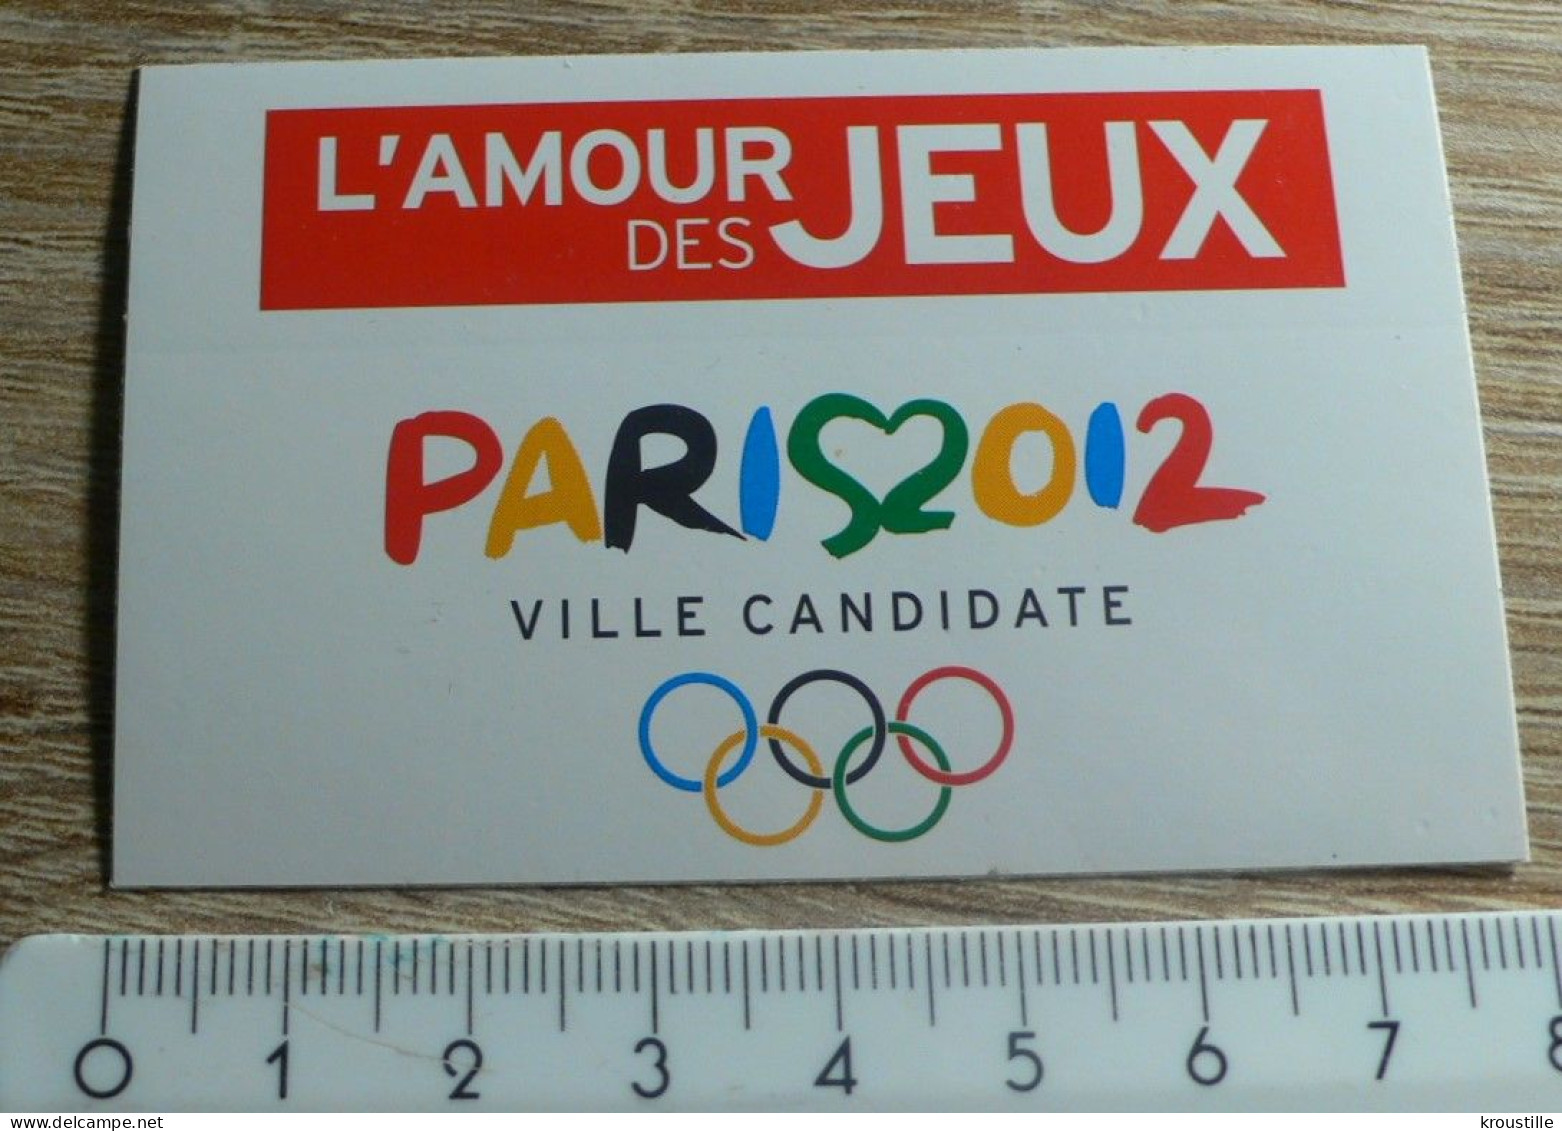 AUTOCOLLANT L'AMOUR DES JEUX - PARIS 2012 - VILLE CANDIDATE JEUX OLYMPIQUES - Aufkleber